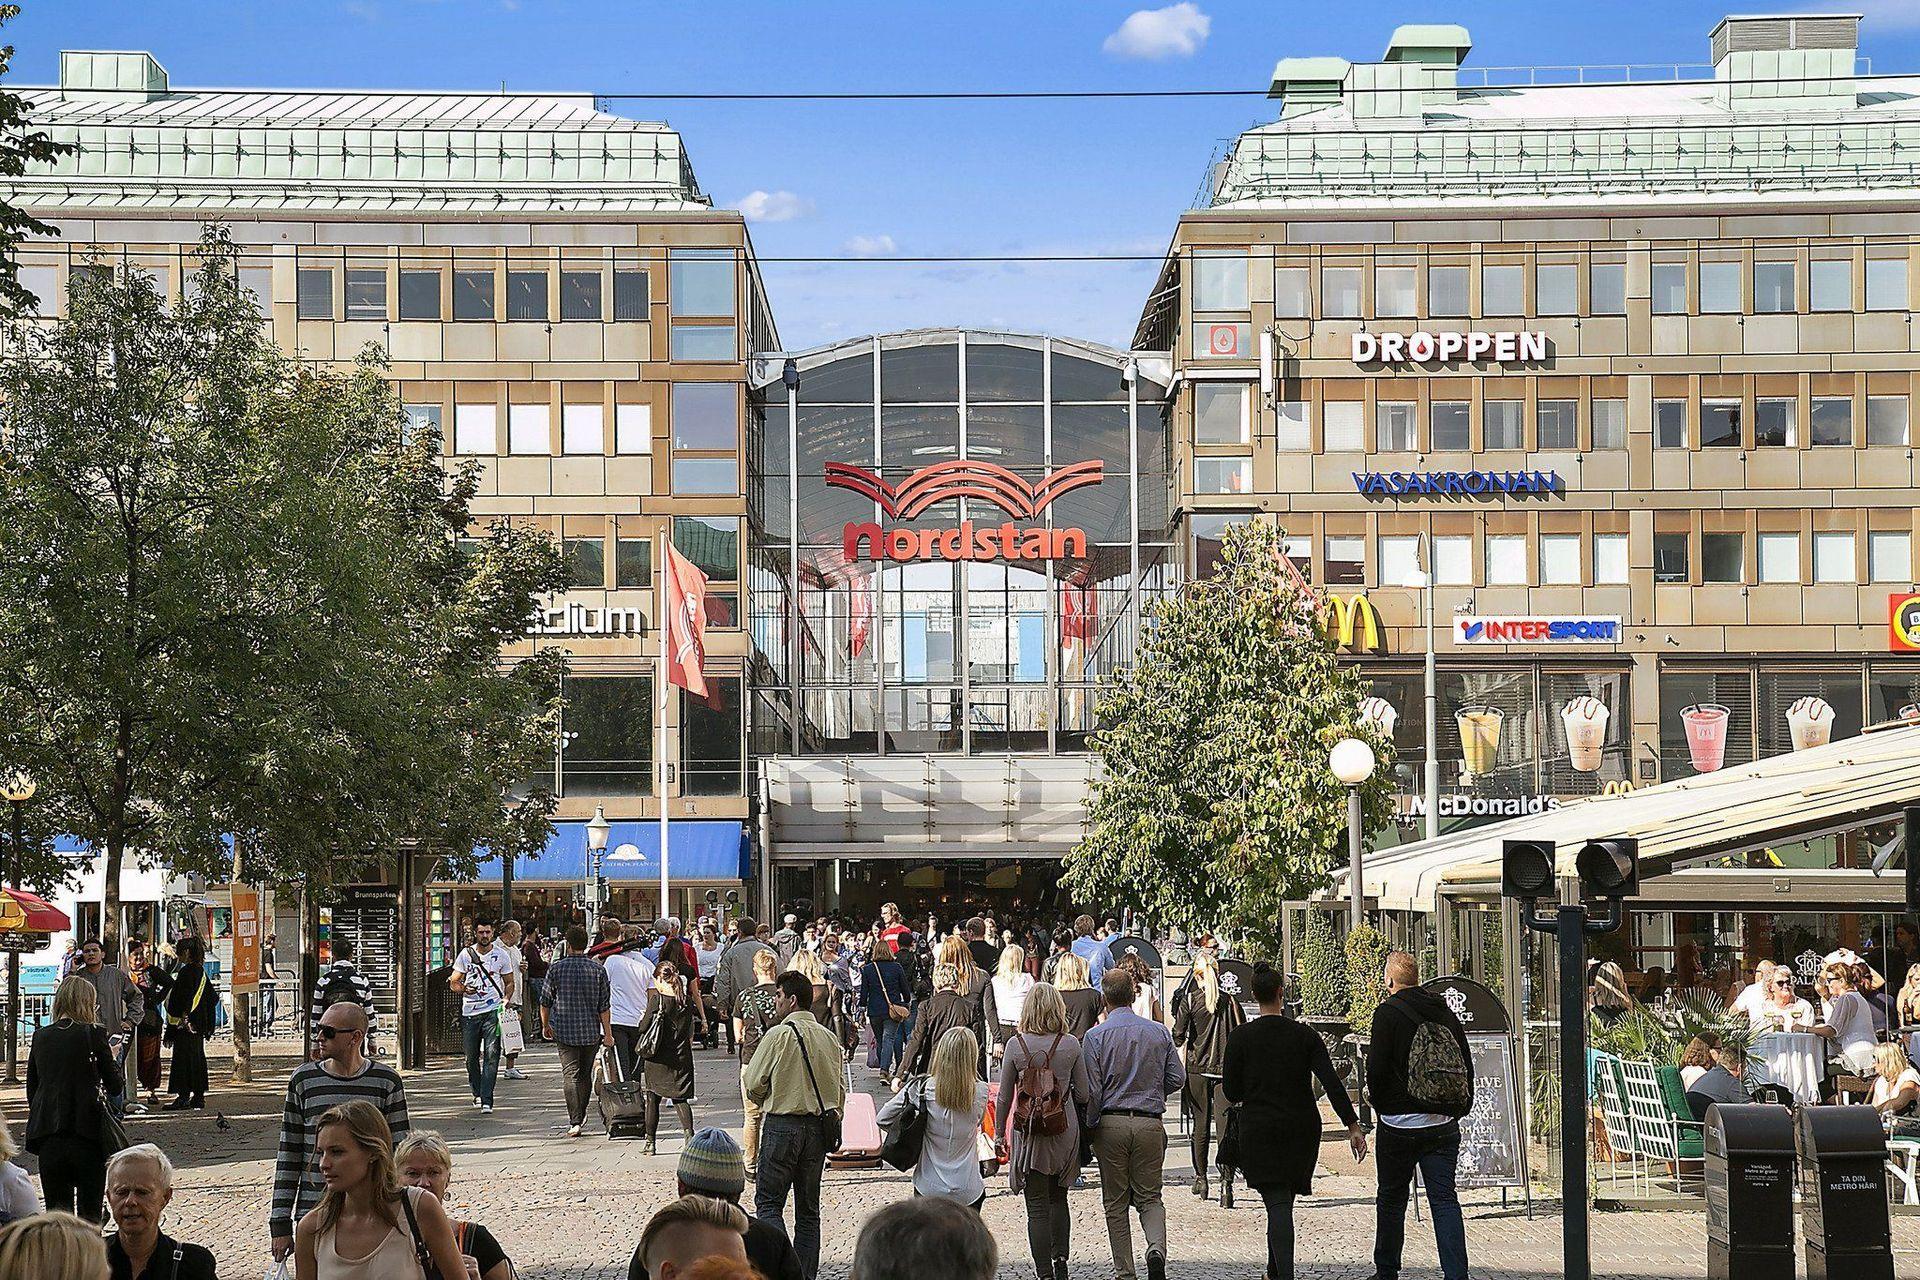 Nordstan shopping center in Gothenburg